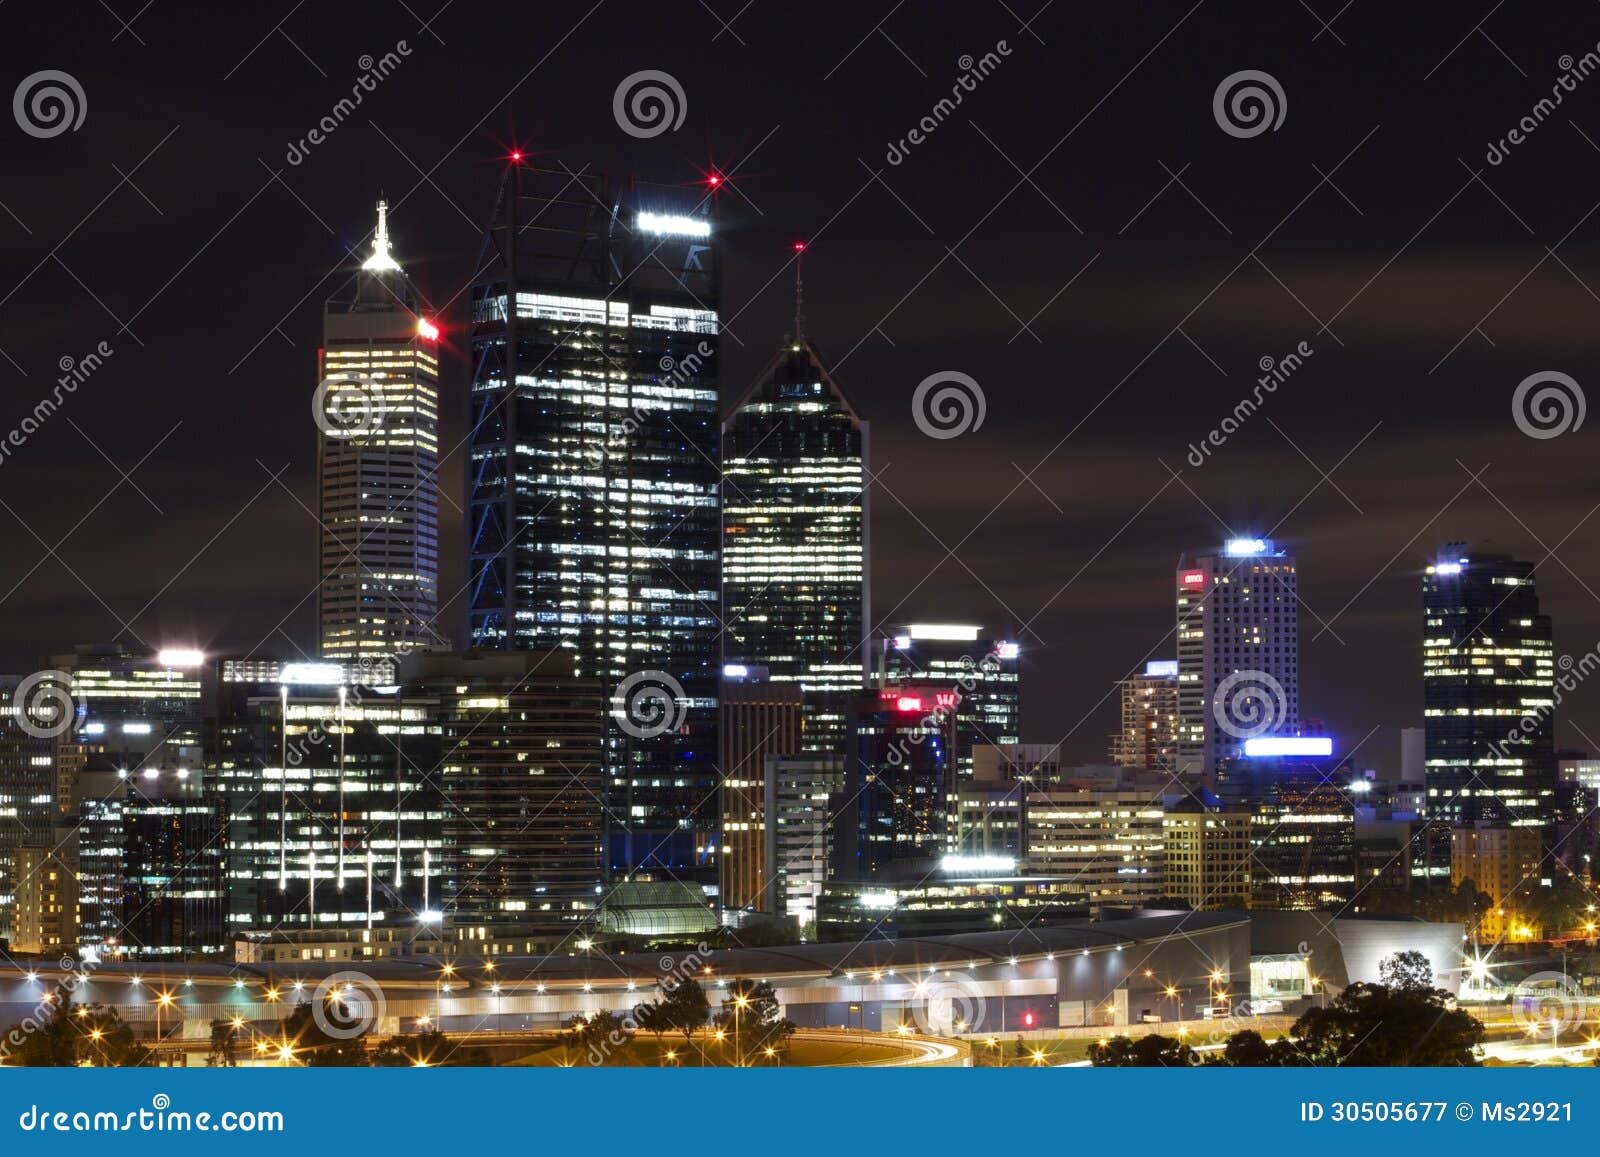 Perth City at Night stock image pic